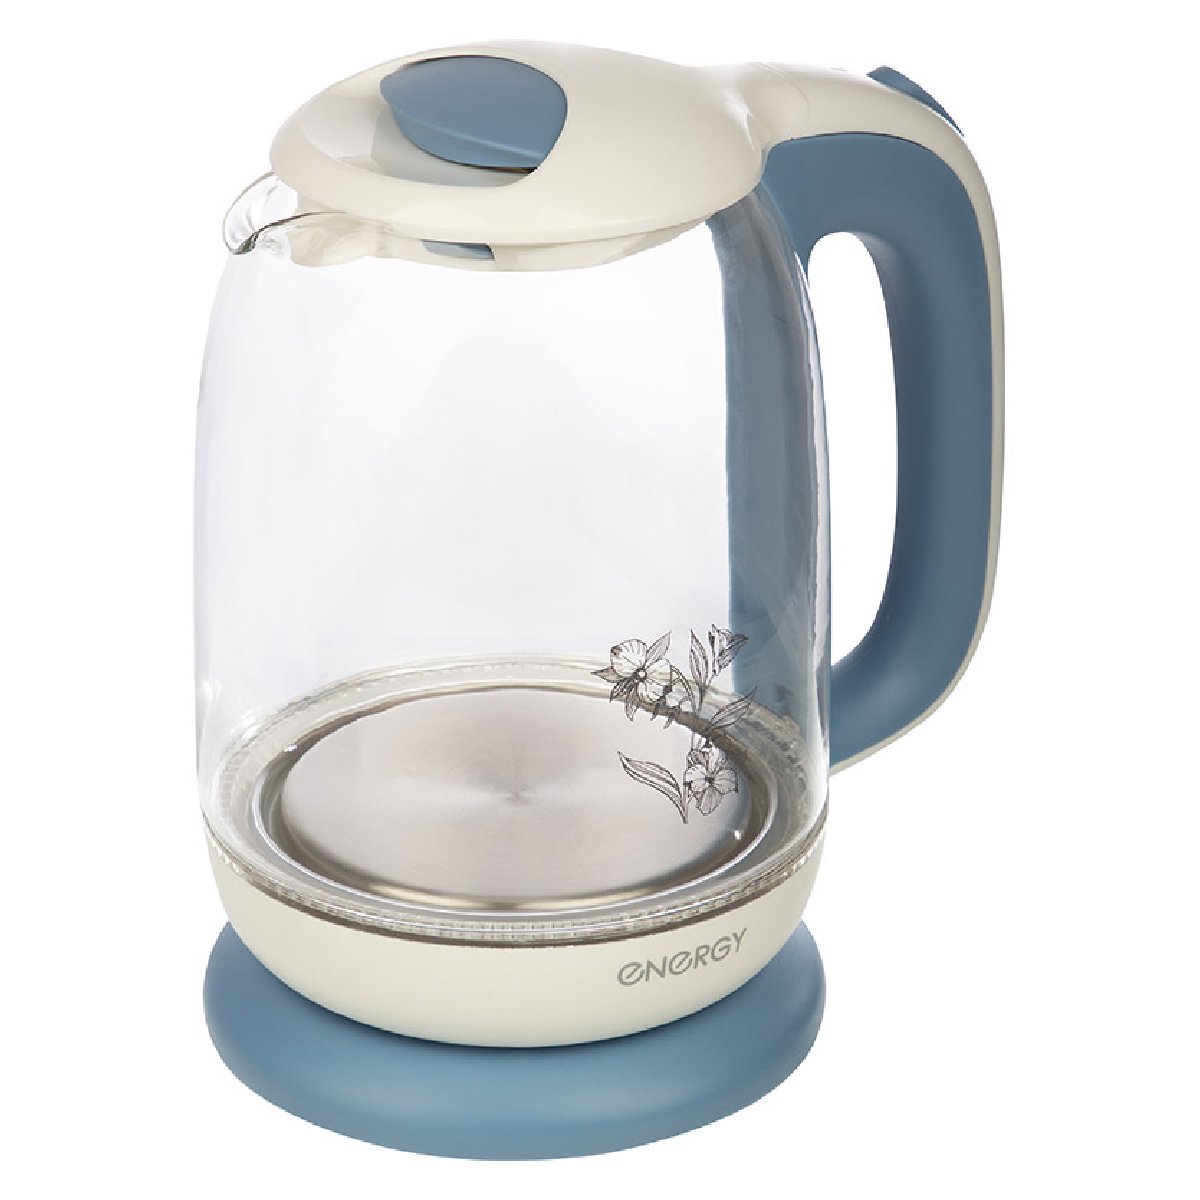 Energy E-281 чайник электрический дисковый, 1.7л, 2200Вт, стеклянный, бело-голубойКупить